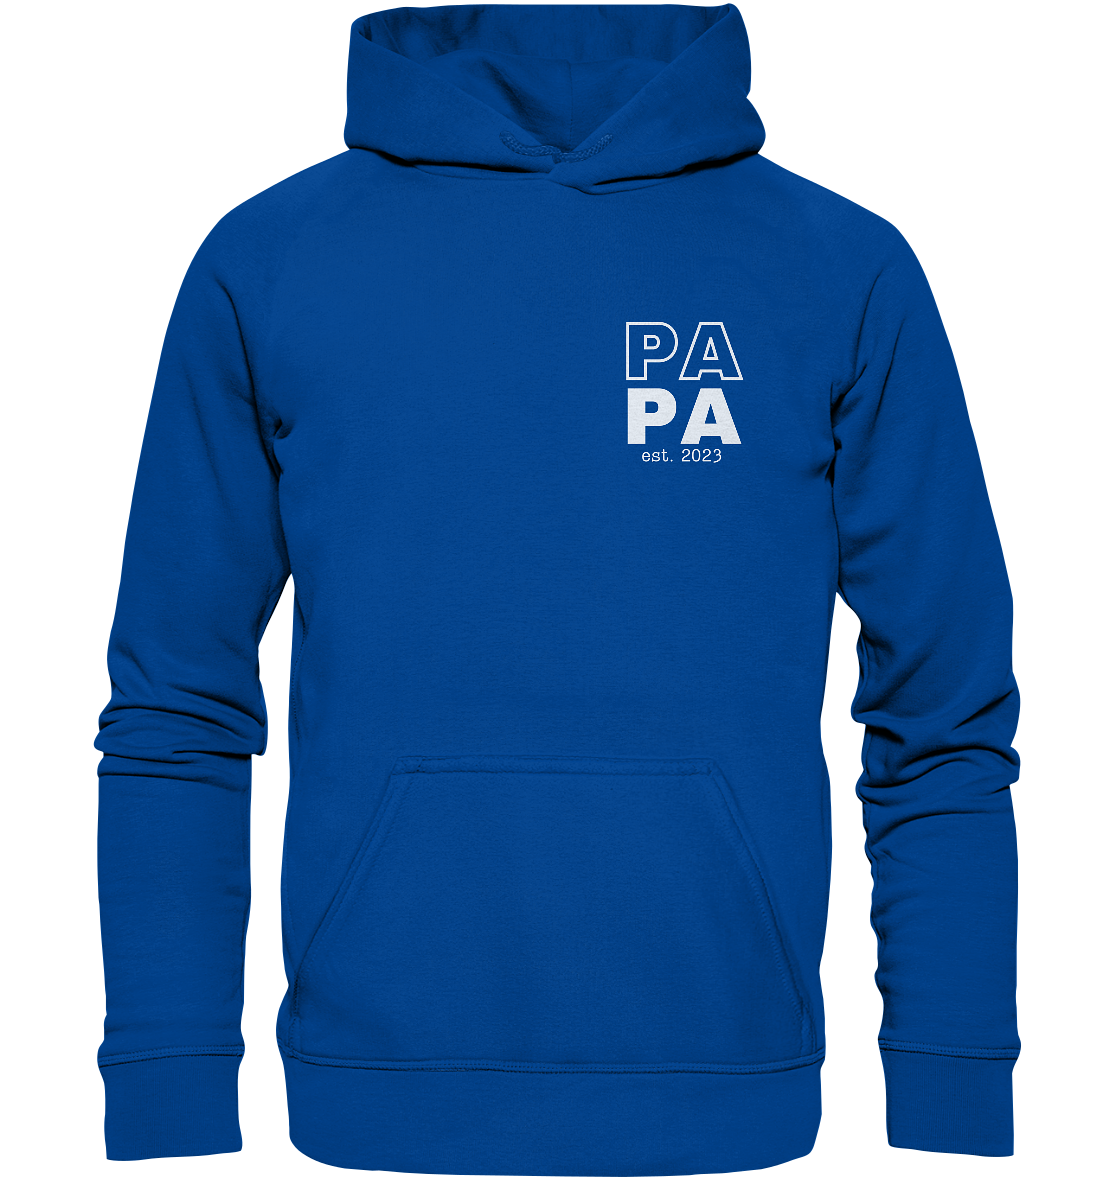 Ein Papa Hoodie mit minimalistischem Design von ShirtDesire. Personalisierter Druck, hochwertige Materialien. Perfekt für stolze Väter, die ihren eigenen Stil ausdrücken möchten.